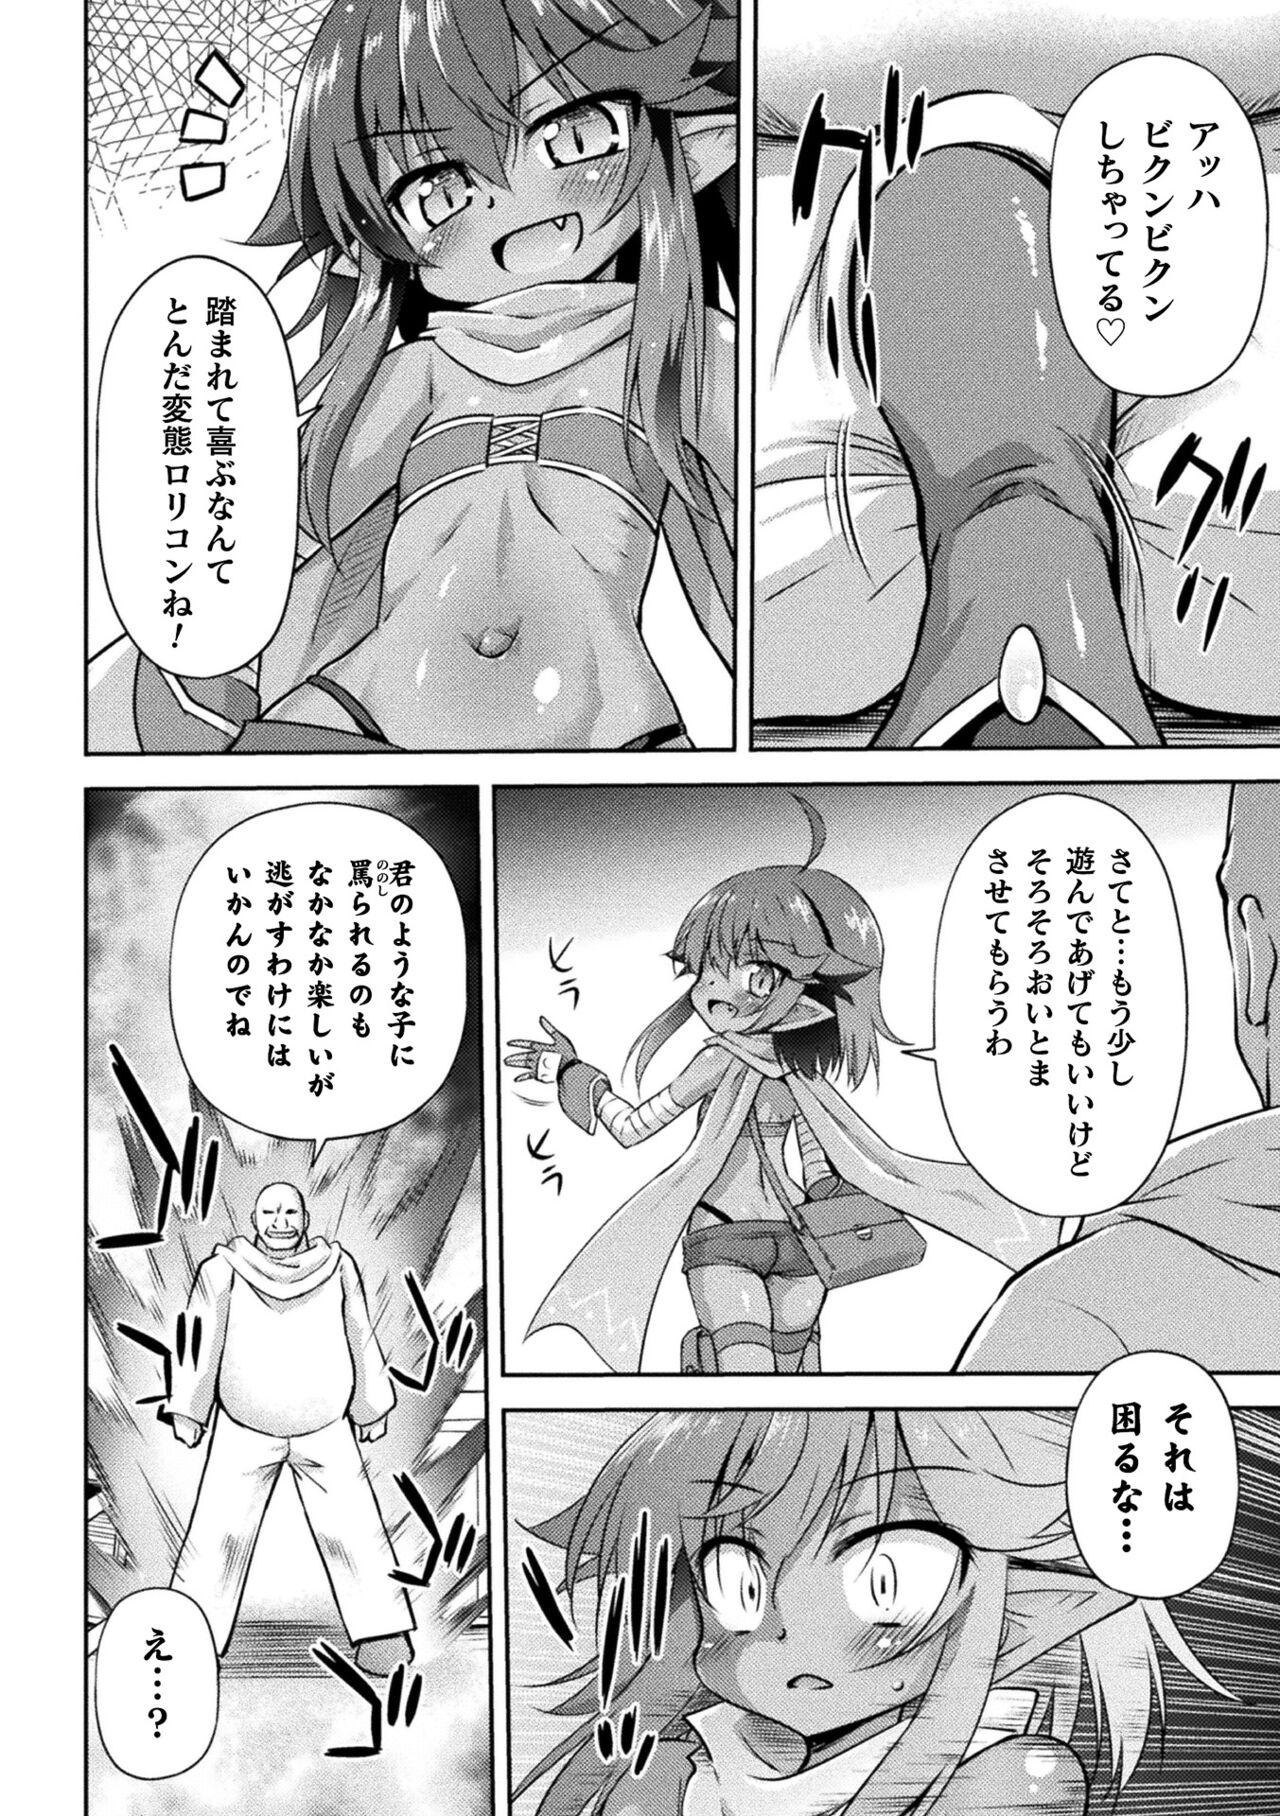 Gayemo 2D Comic Magazine Mesugaki Haramase Seisai! Wakarase Chakushou de Omedeta Mama Debut Vol. 2 Lez Hardcore - Page 6